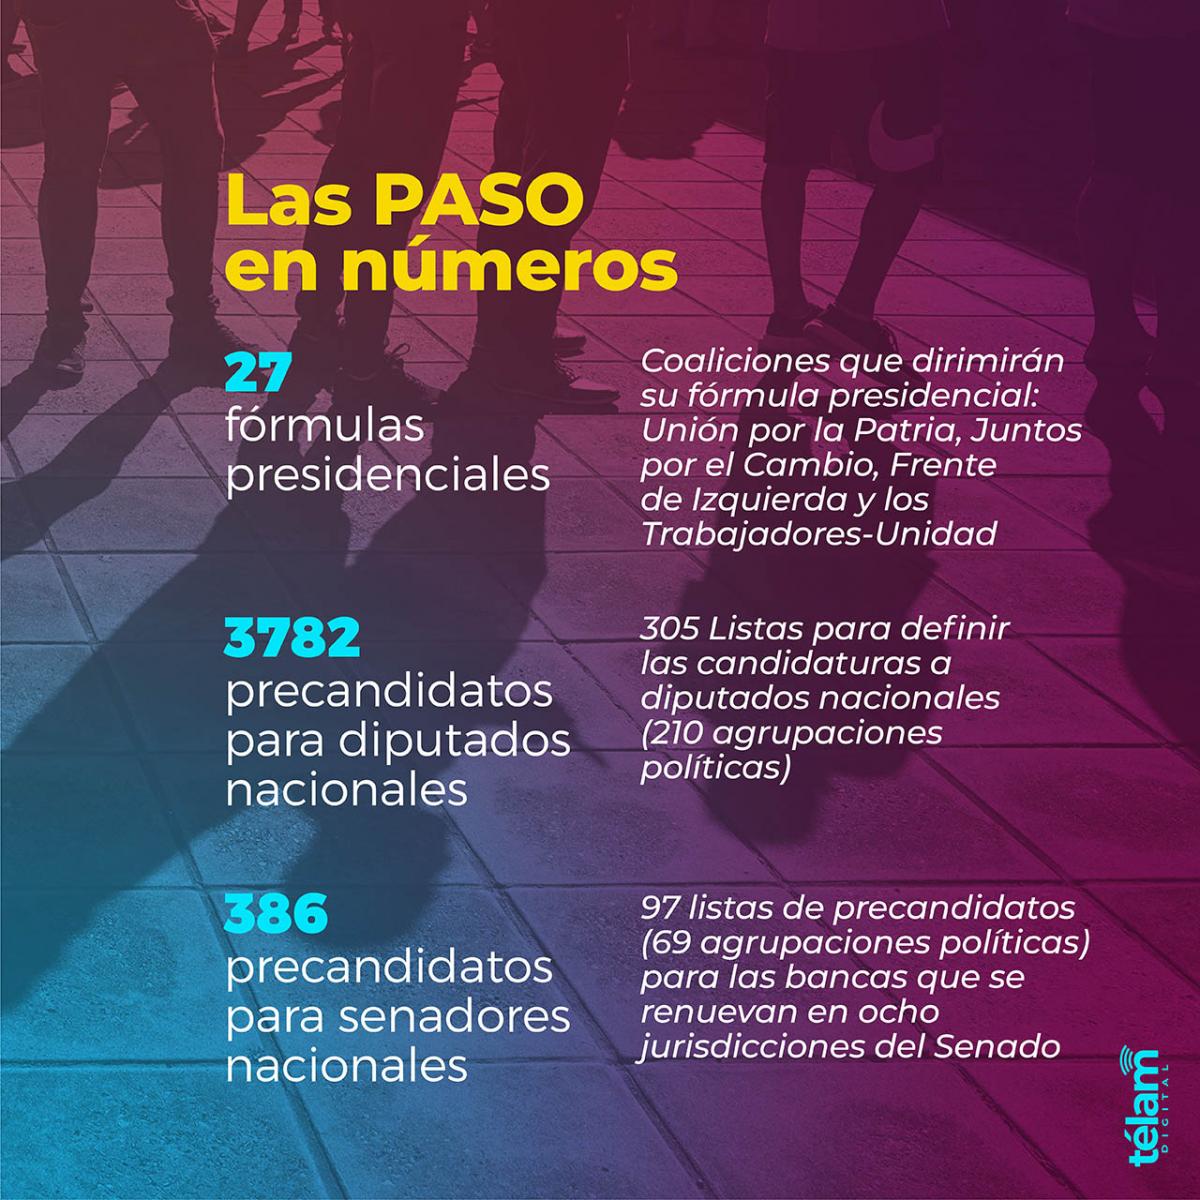 Se vienen las Paso: 35 millones de argentinos eligen candidatos a presidente y a legisladores imagen-2